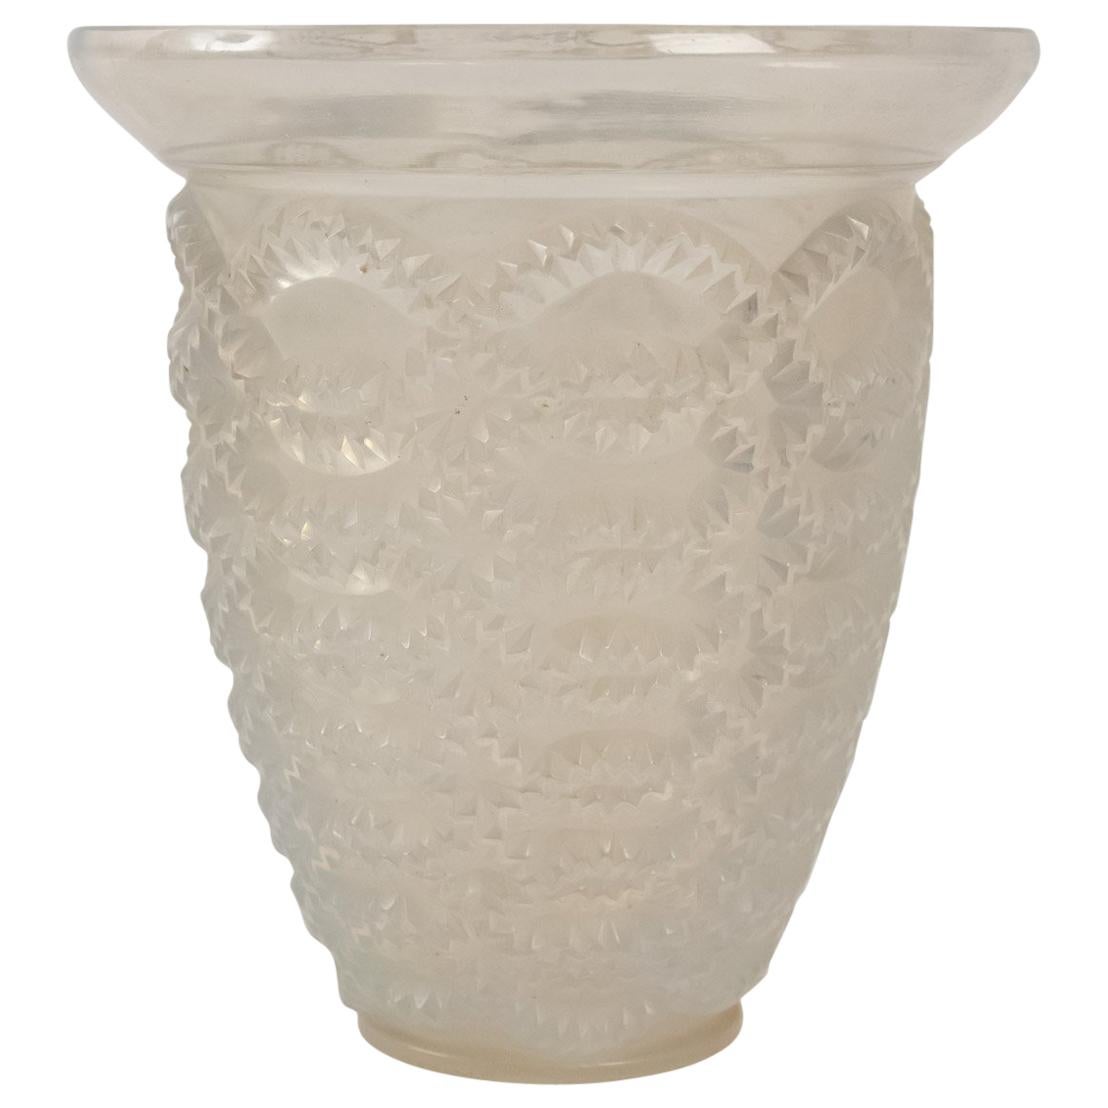 R. Lalique Opalescent "Guirlandes" Vase, 1935 For Sale